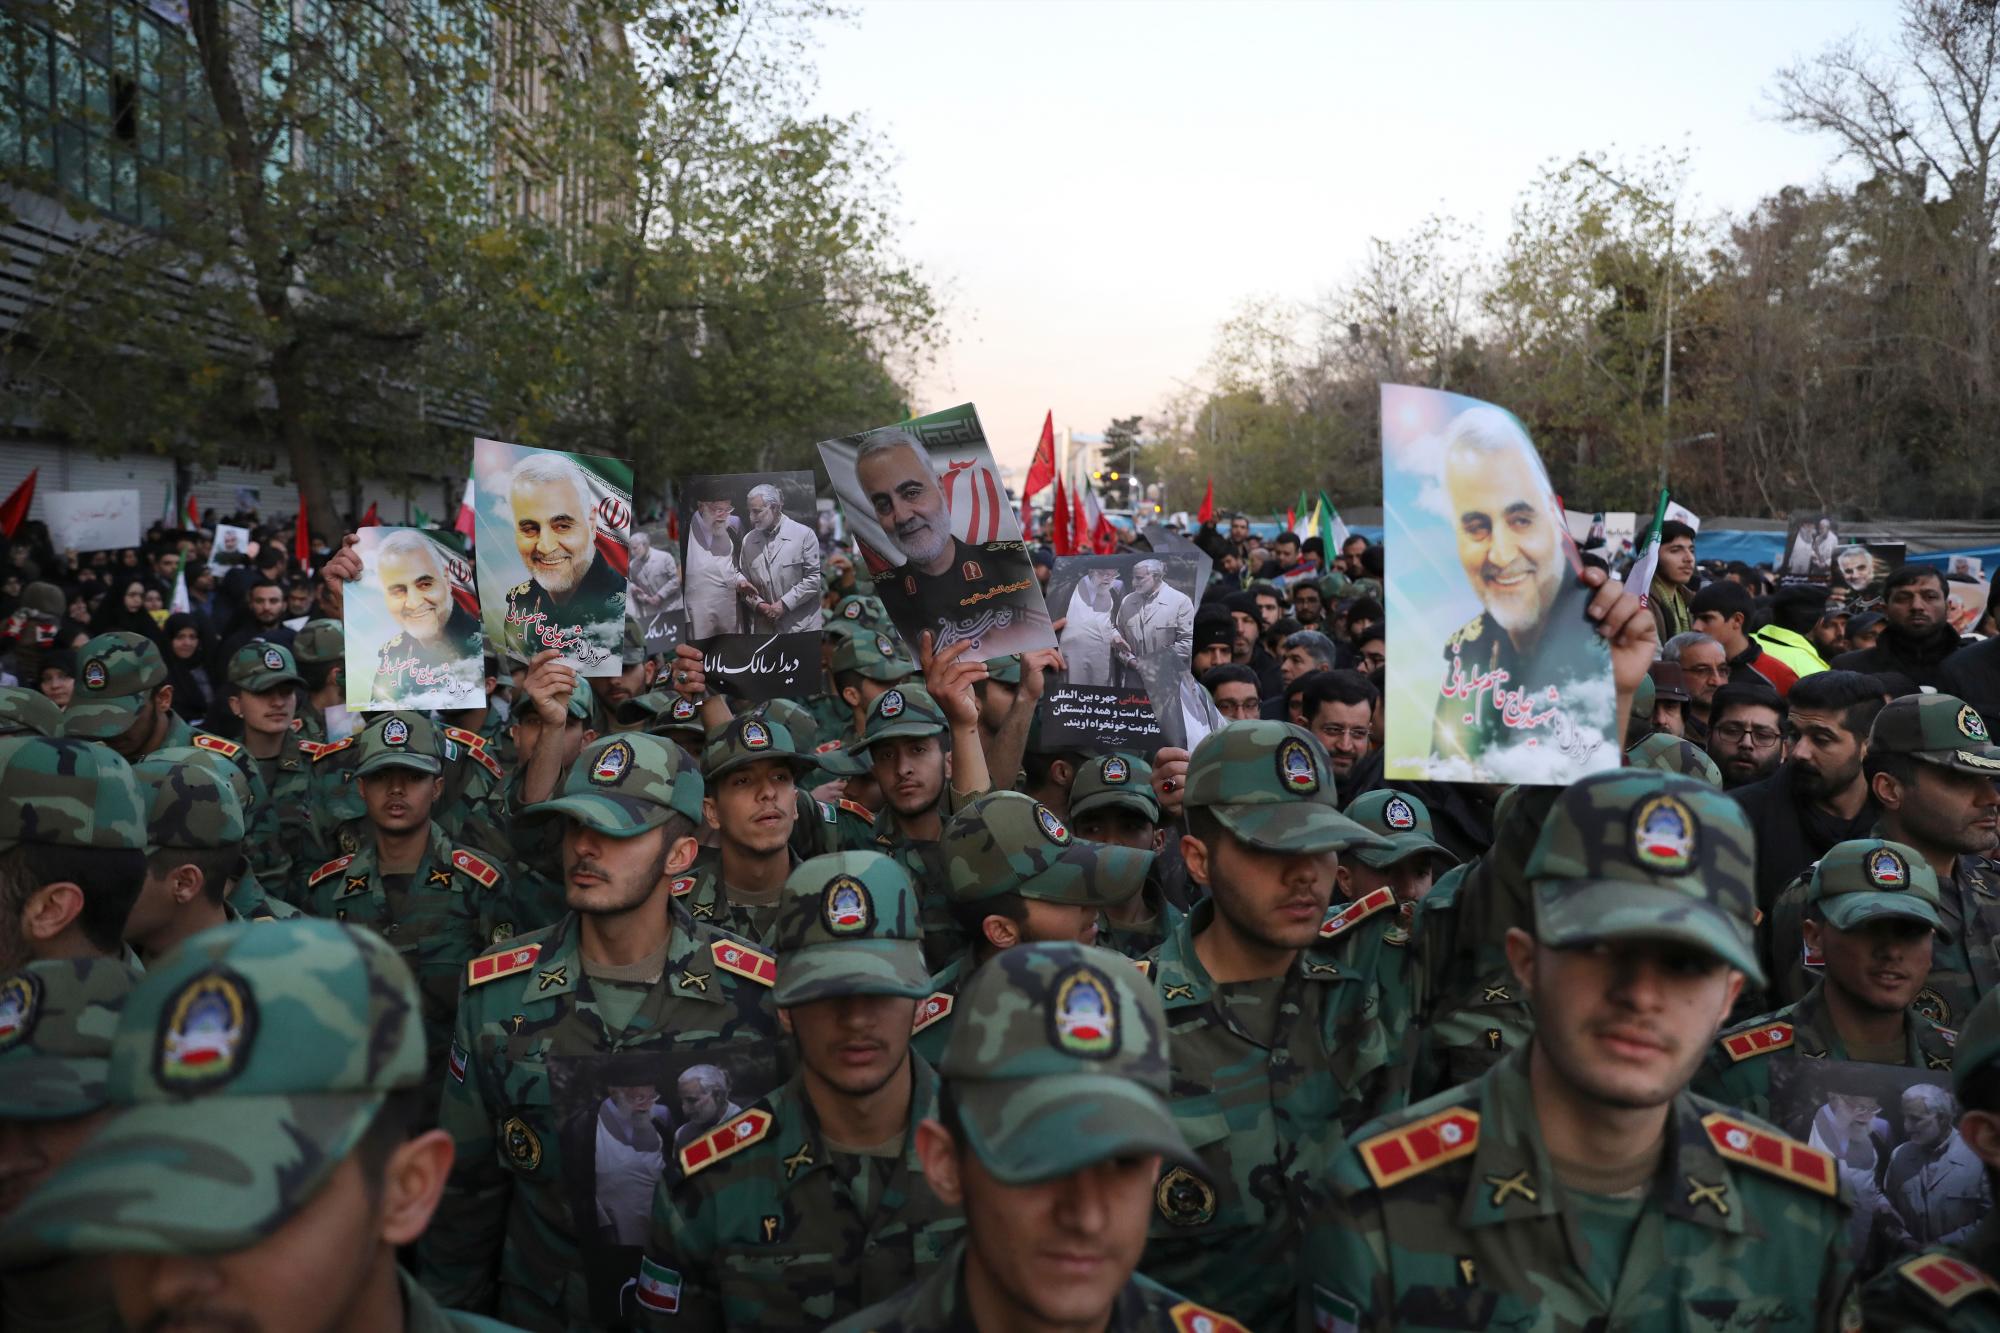 Los cadetes del ejército asisten a una ceremonia fúnebre para el general iraní Qassem Soleimani, que se muestra en carteles, y sus camaradas, que fueron asesinados en Irak en un ataque con aviones no tripulados estadounidenses el viernes, en la plaza Enqelab-e-Eslami (Revolución Islámica) en Teherán, Irán , Lunes 6 de enero de 2020. (Foto AP / Ebrahim Noroozi)